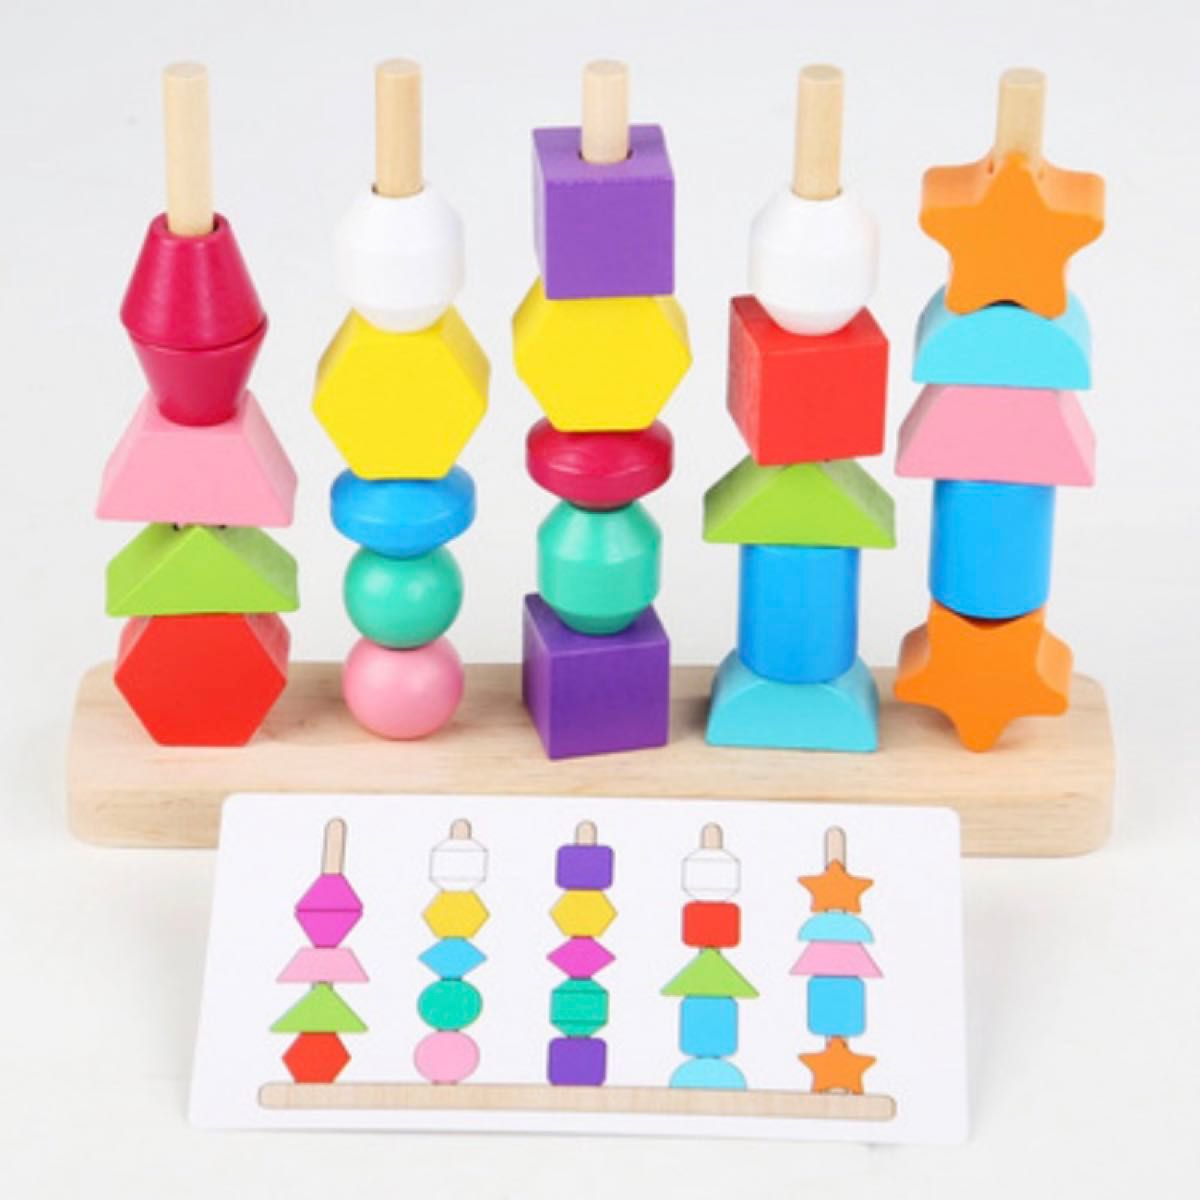 ひも通し 子ども  積み木 つみき おもちゃ 木製 モンテッソーリ 知育玩具